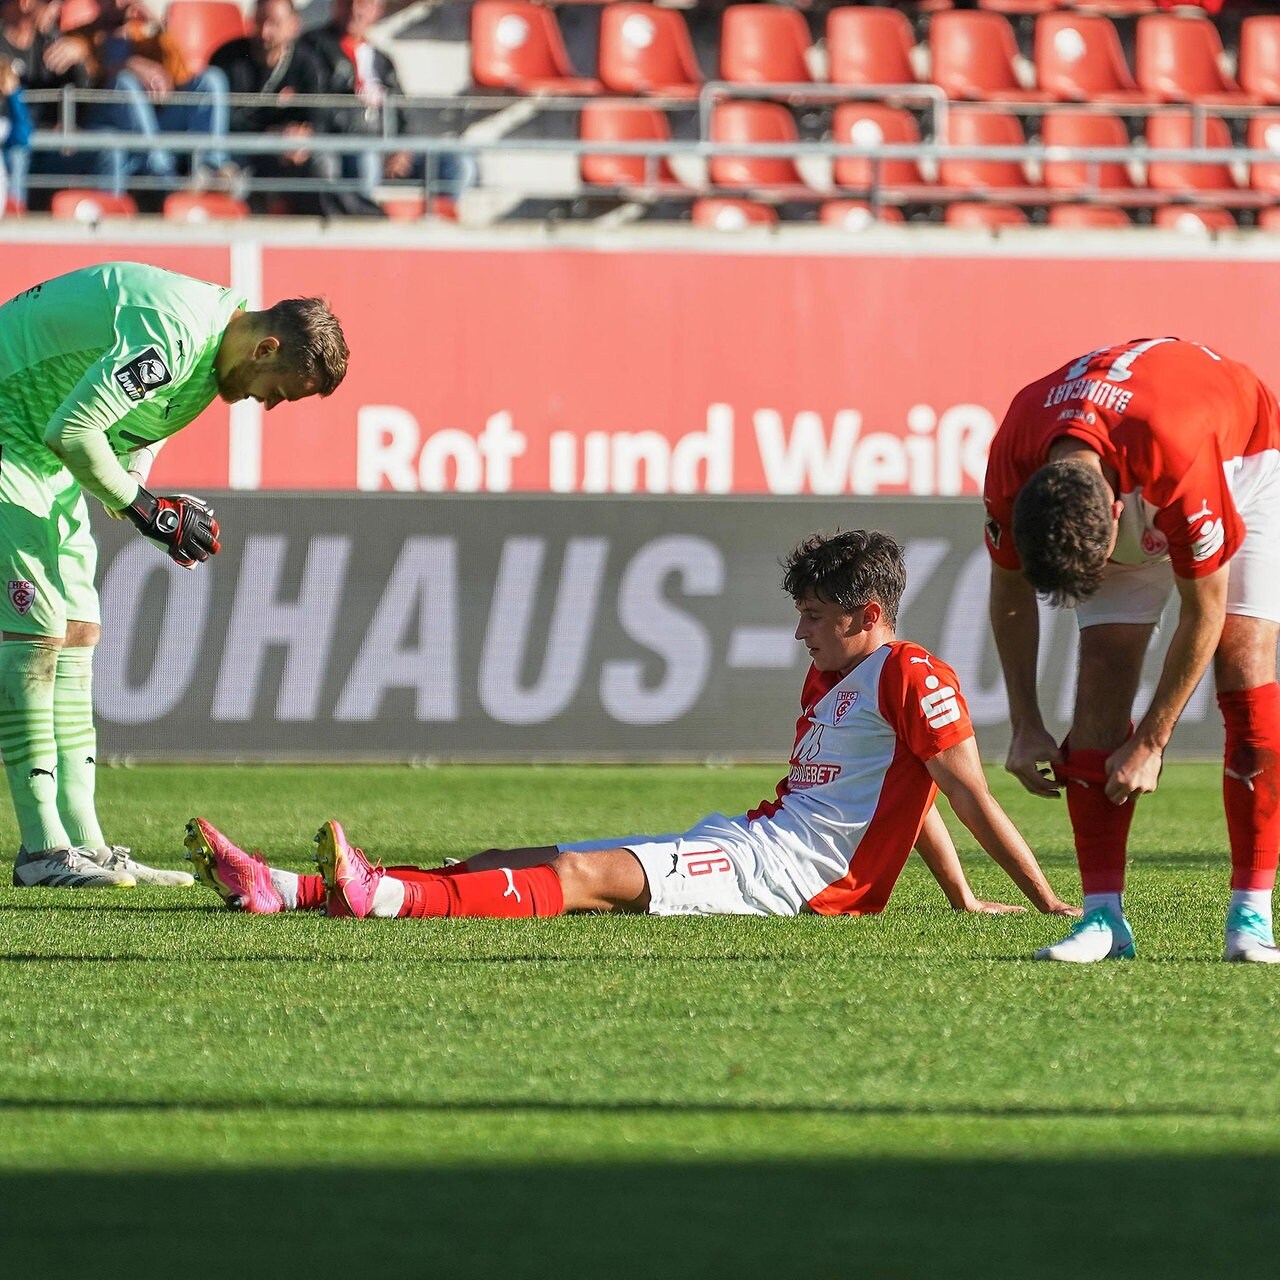 Hallescher FC Huth versetzt Ristic-Team den nächsten Nackenschlag MDR.DE